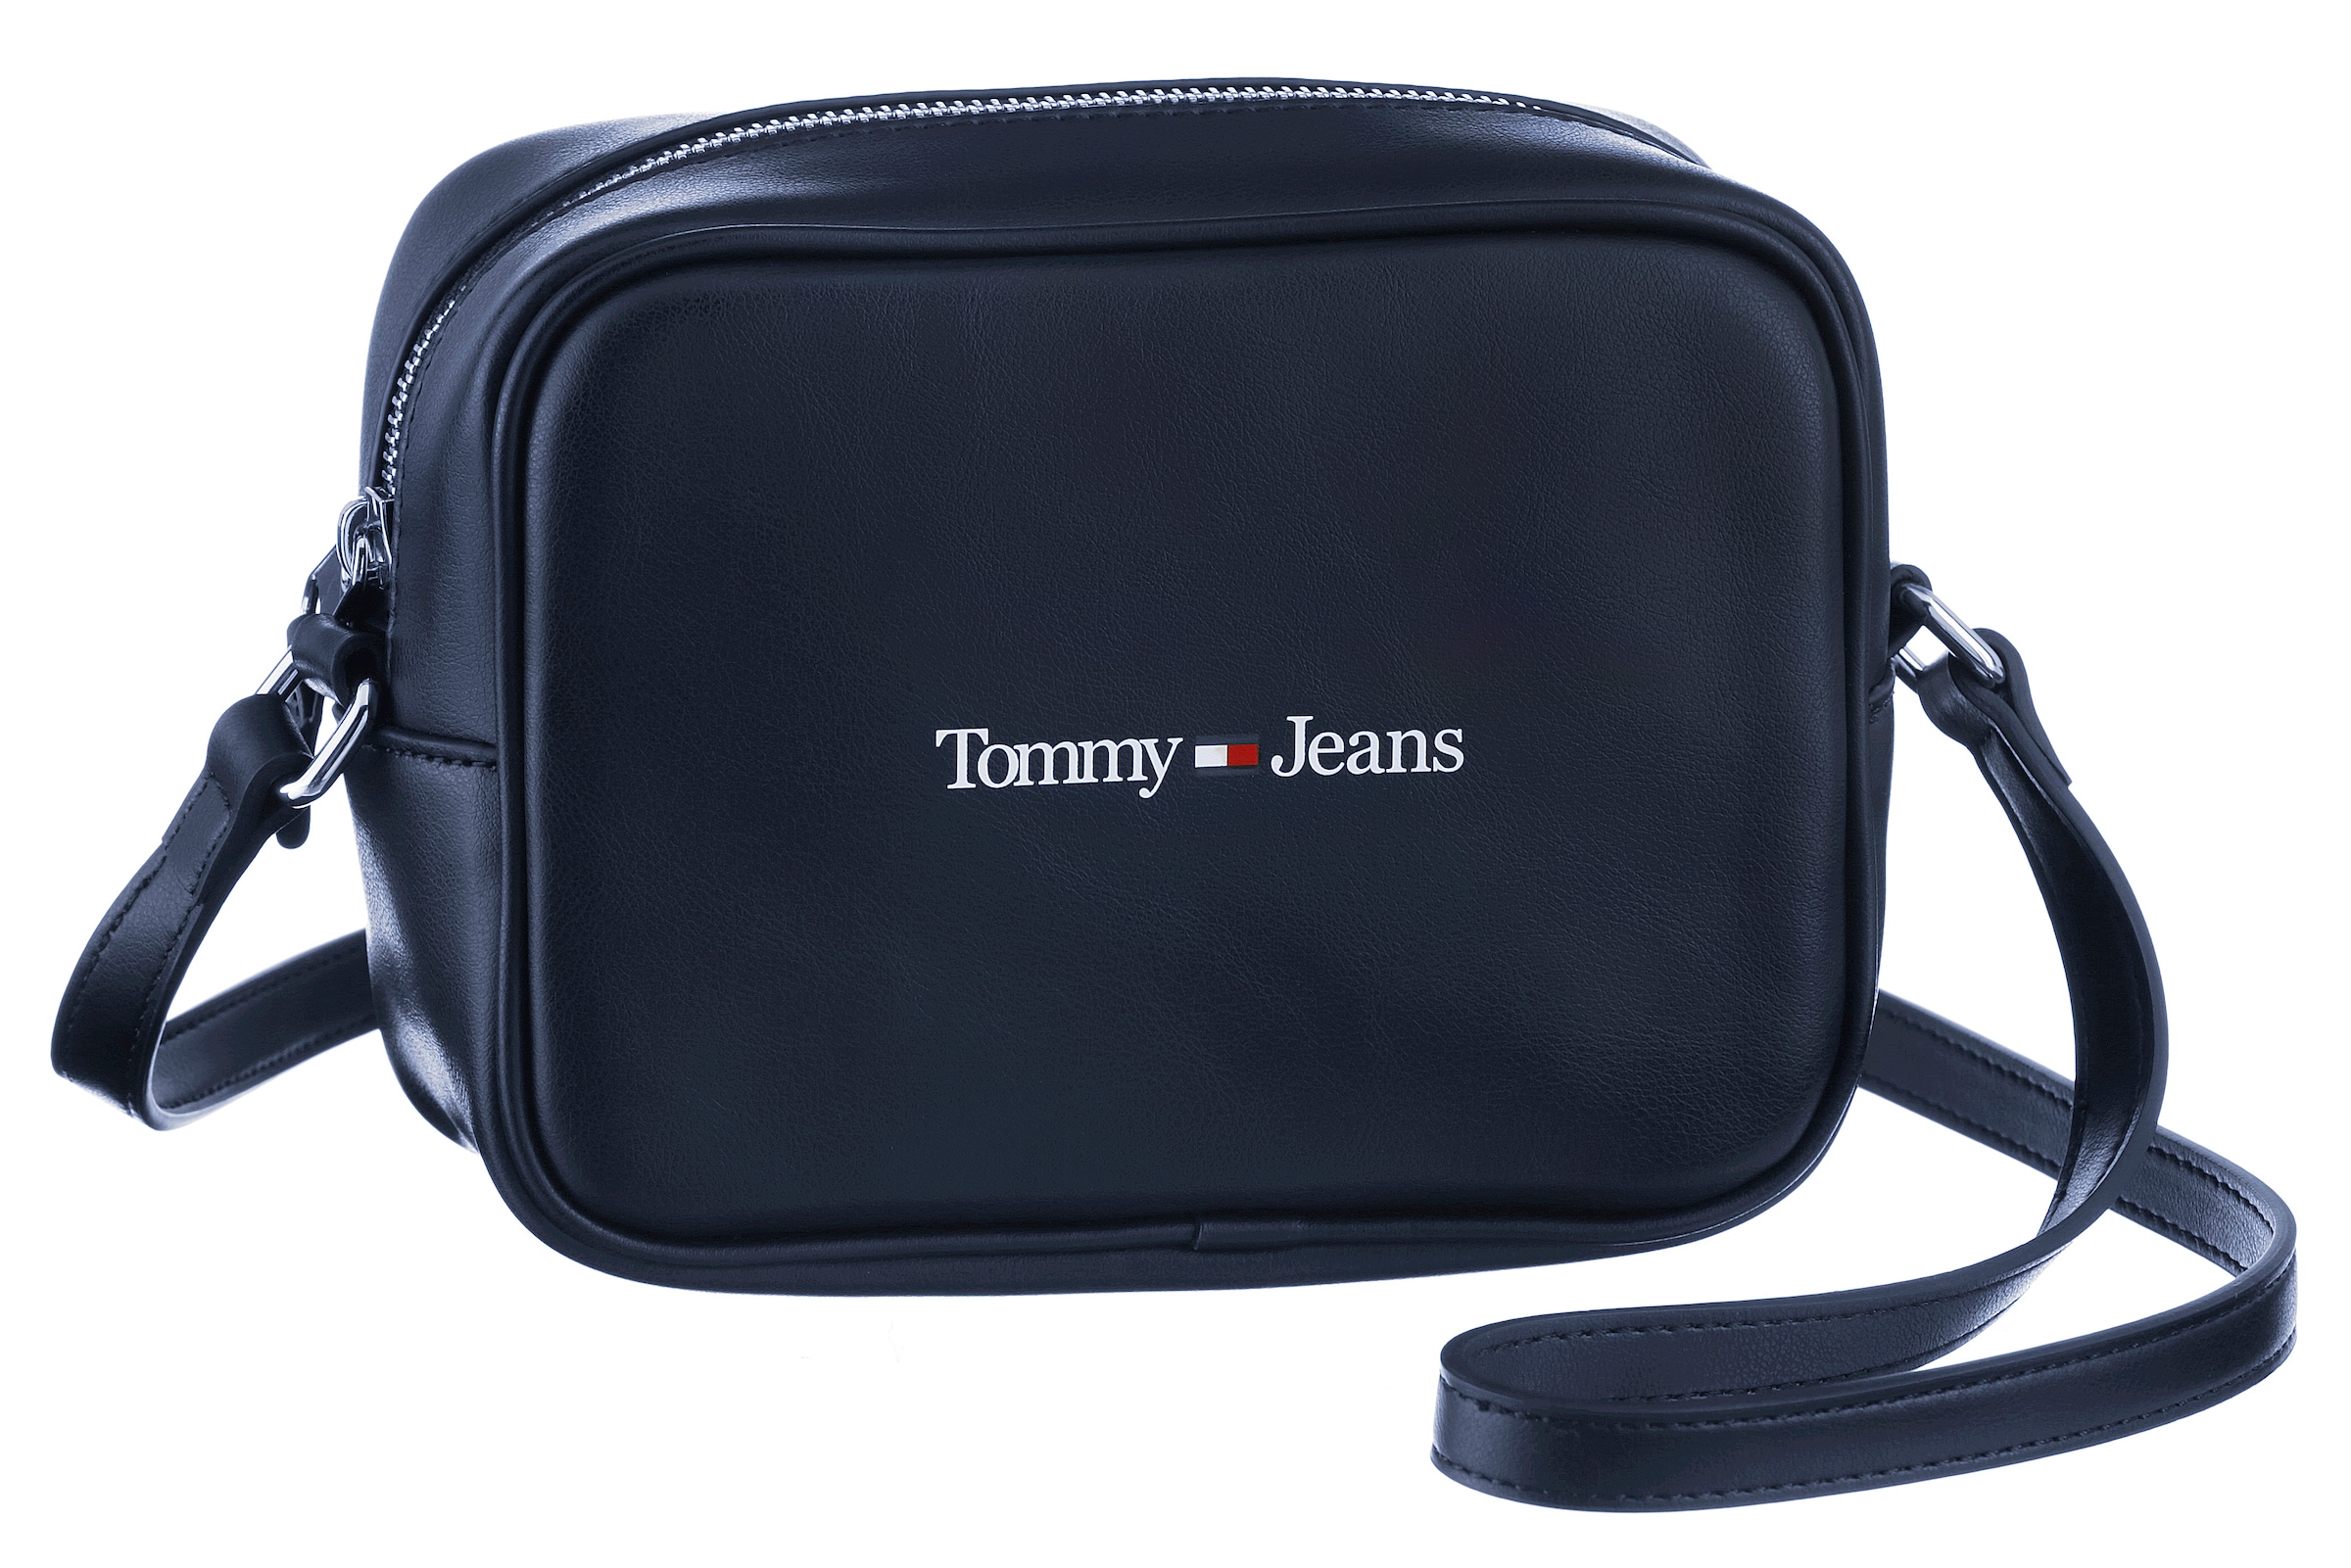 OTTOversand Jeans Bag Tommy Mini bei BAG«, »CAMERA Umhängetasche kleine